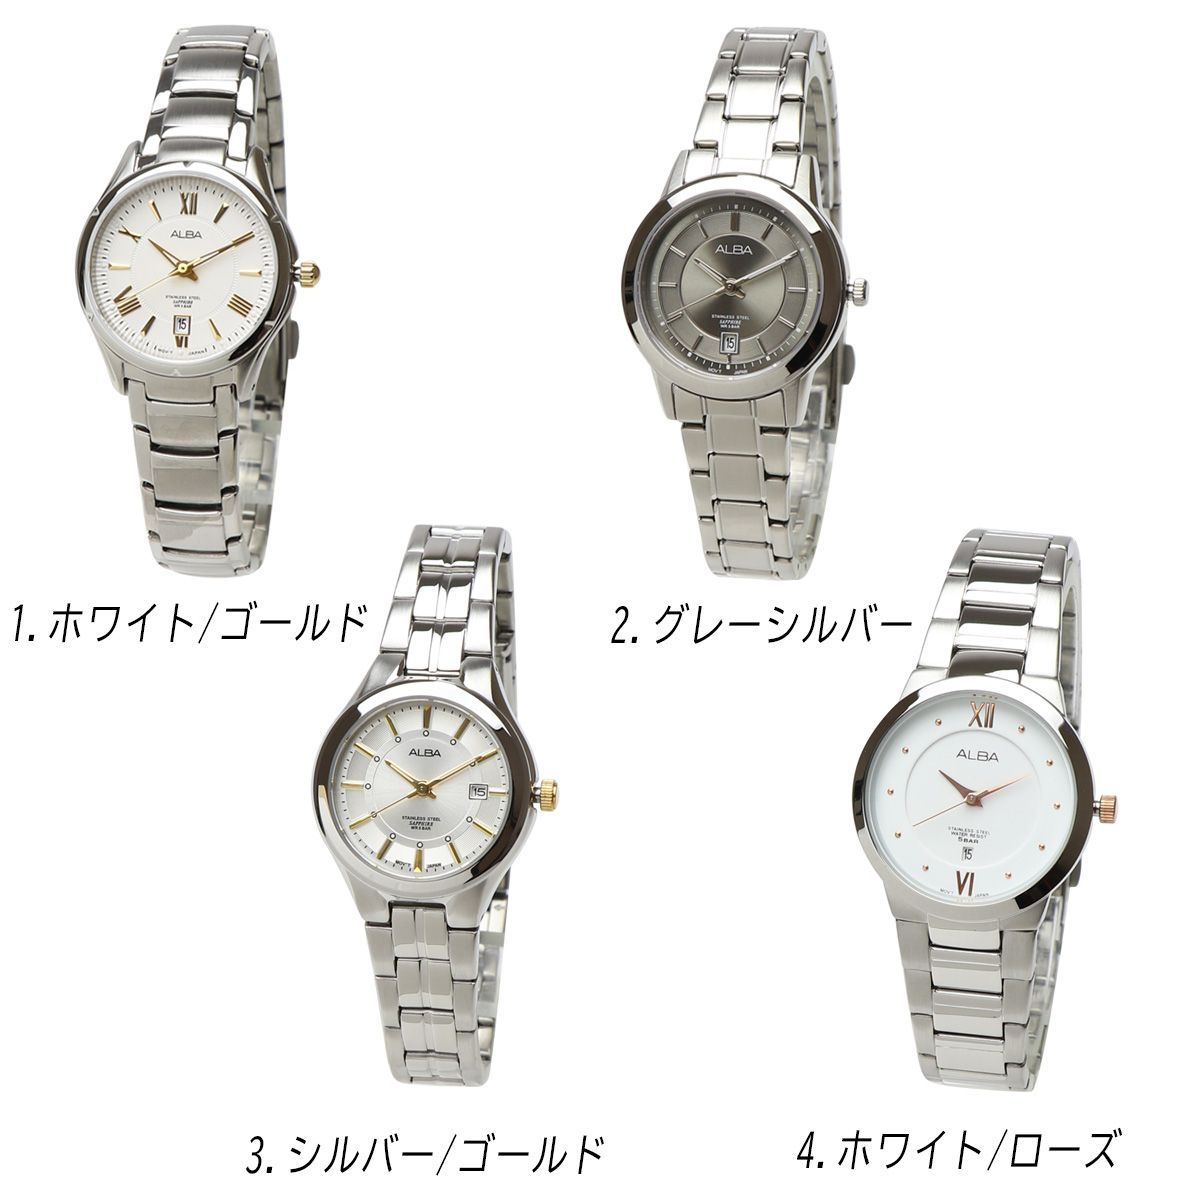 大放出セール】 新品 レディース アナログ 腕時計 クォーツ ホワイト×ゴールド シンプル